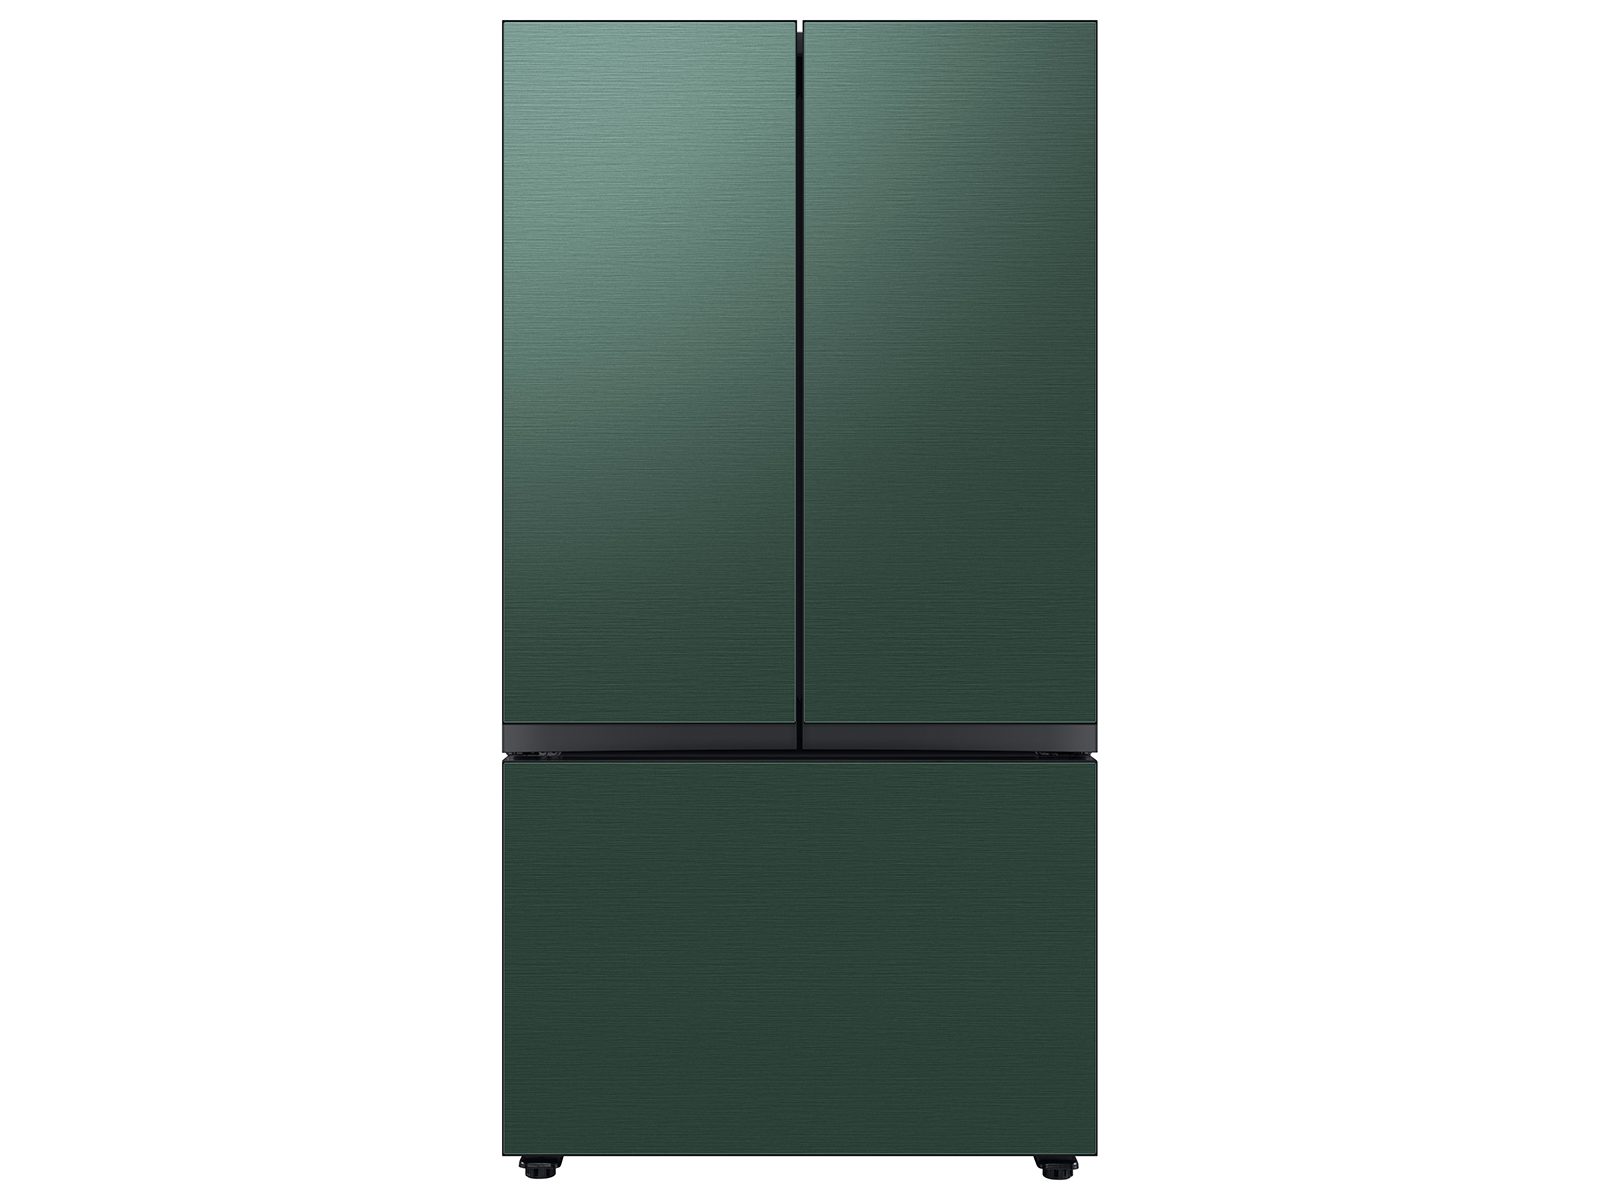 Samsung Bespoke 3-Door French Door Refrigerator (24 cu. ft.) with AutoFill Water Pitcher in Emerald in Green Steel(BNDL-1650464486044)